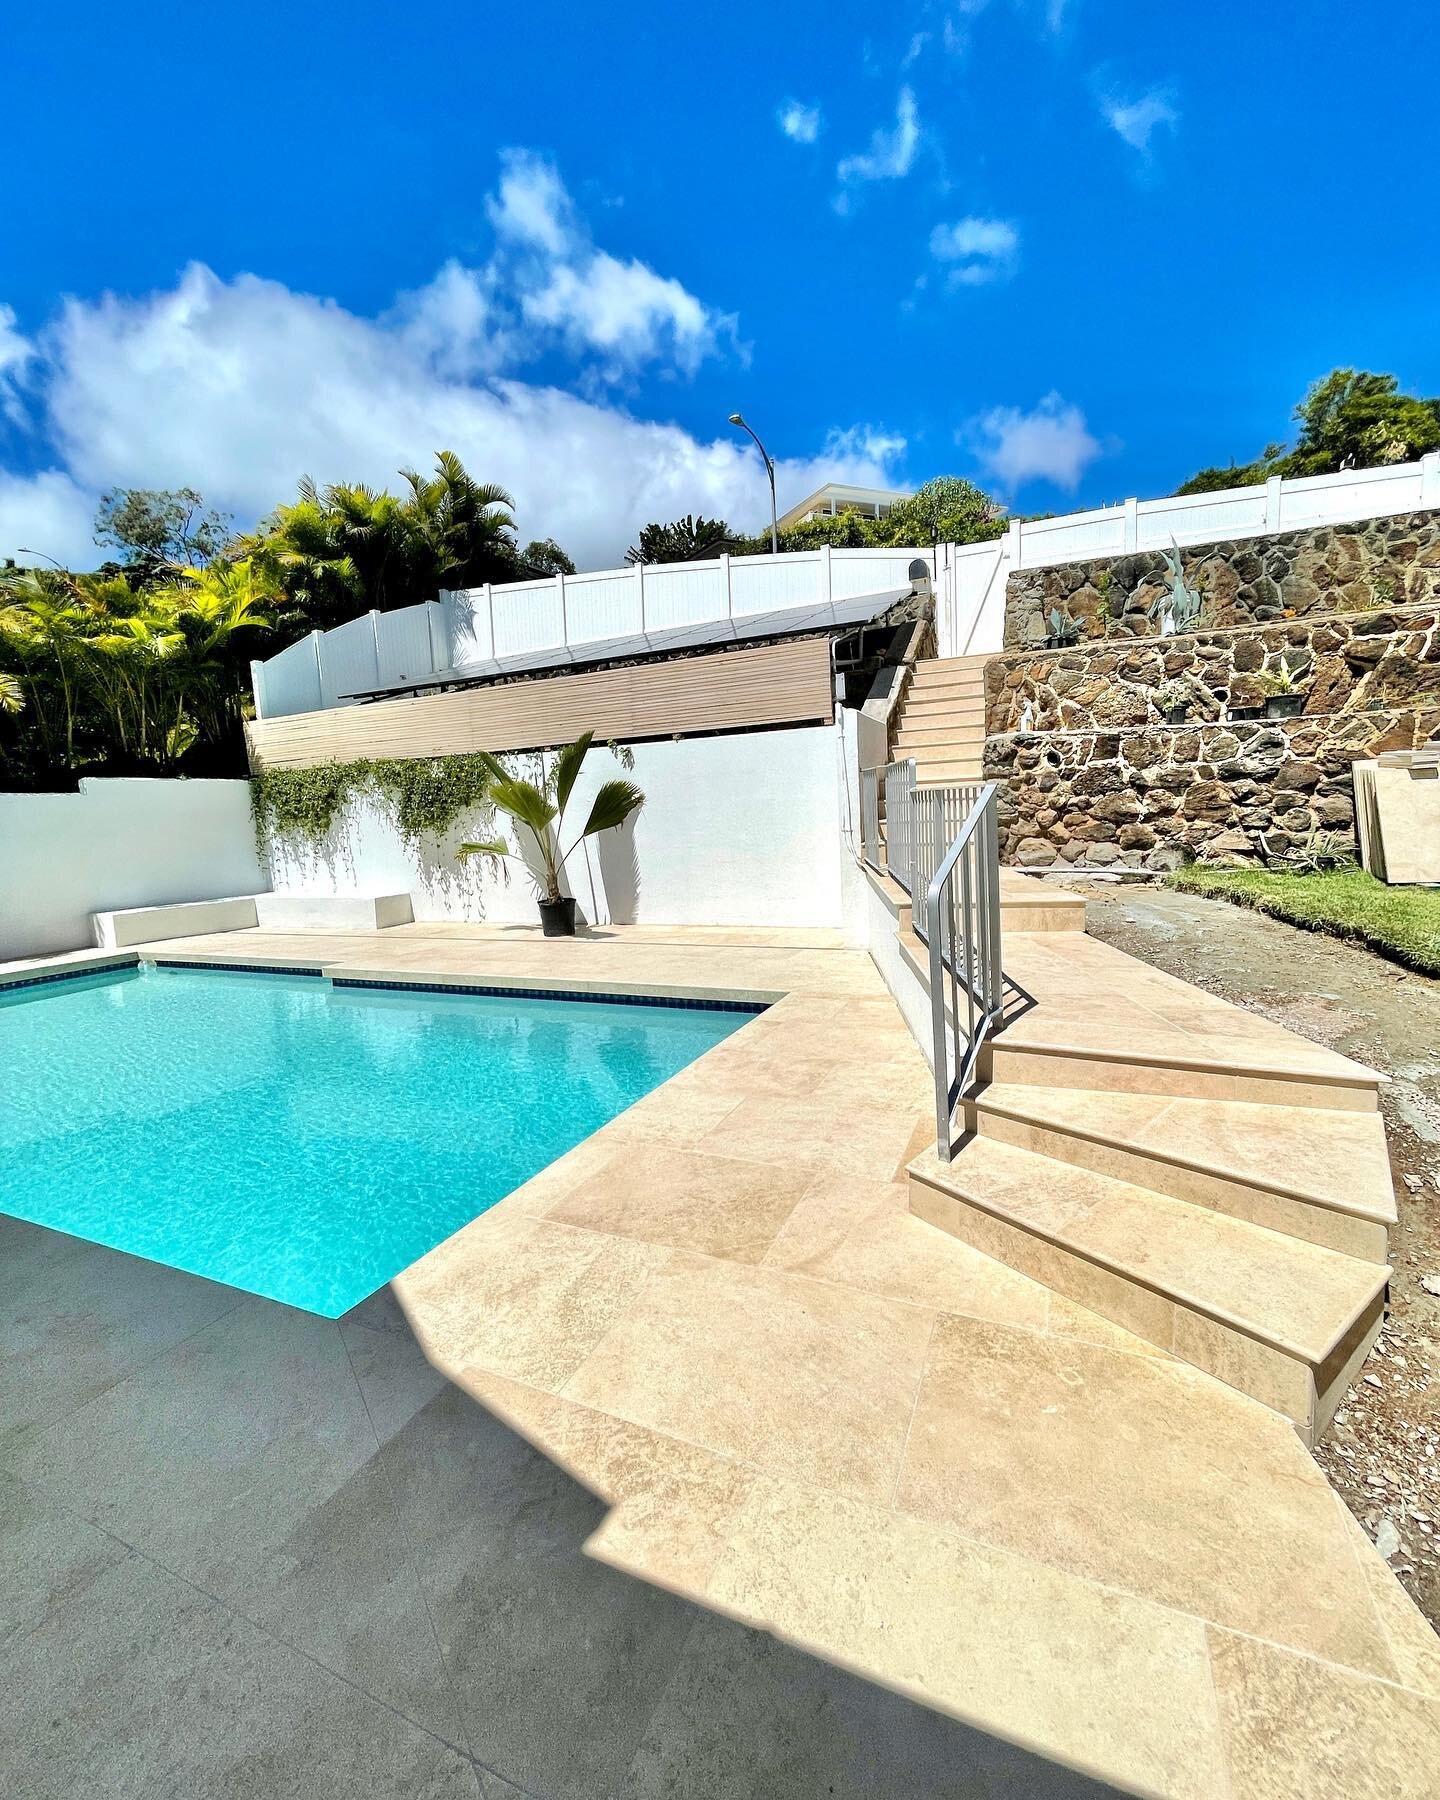 Limestone pool deck and stairs. #limestone #tile #limestonefloor #pooldesign #poolparty #flooring #hawaii